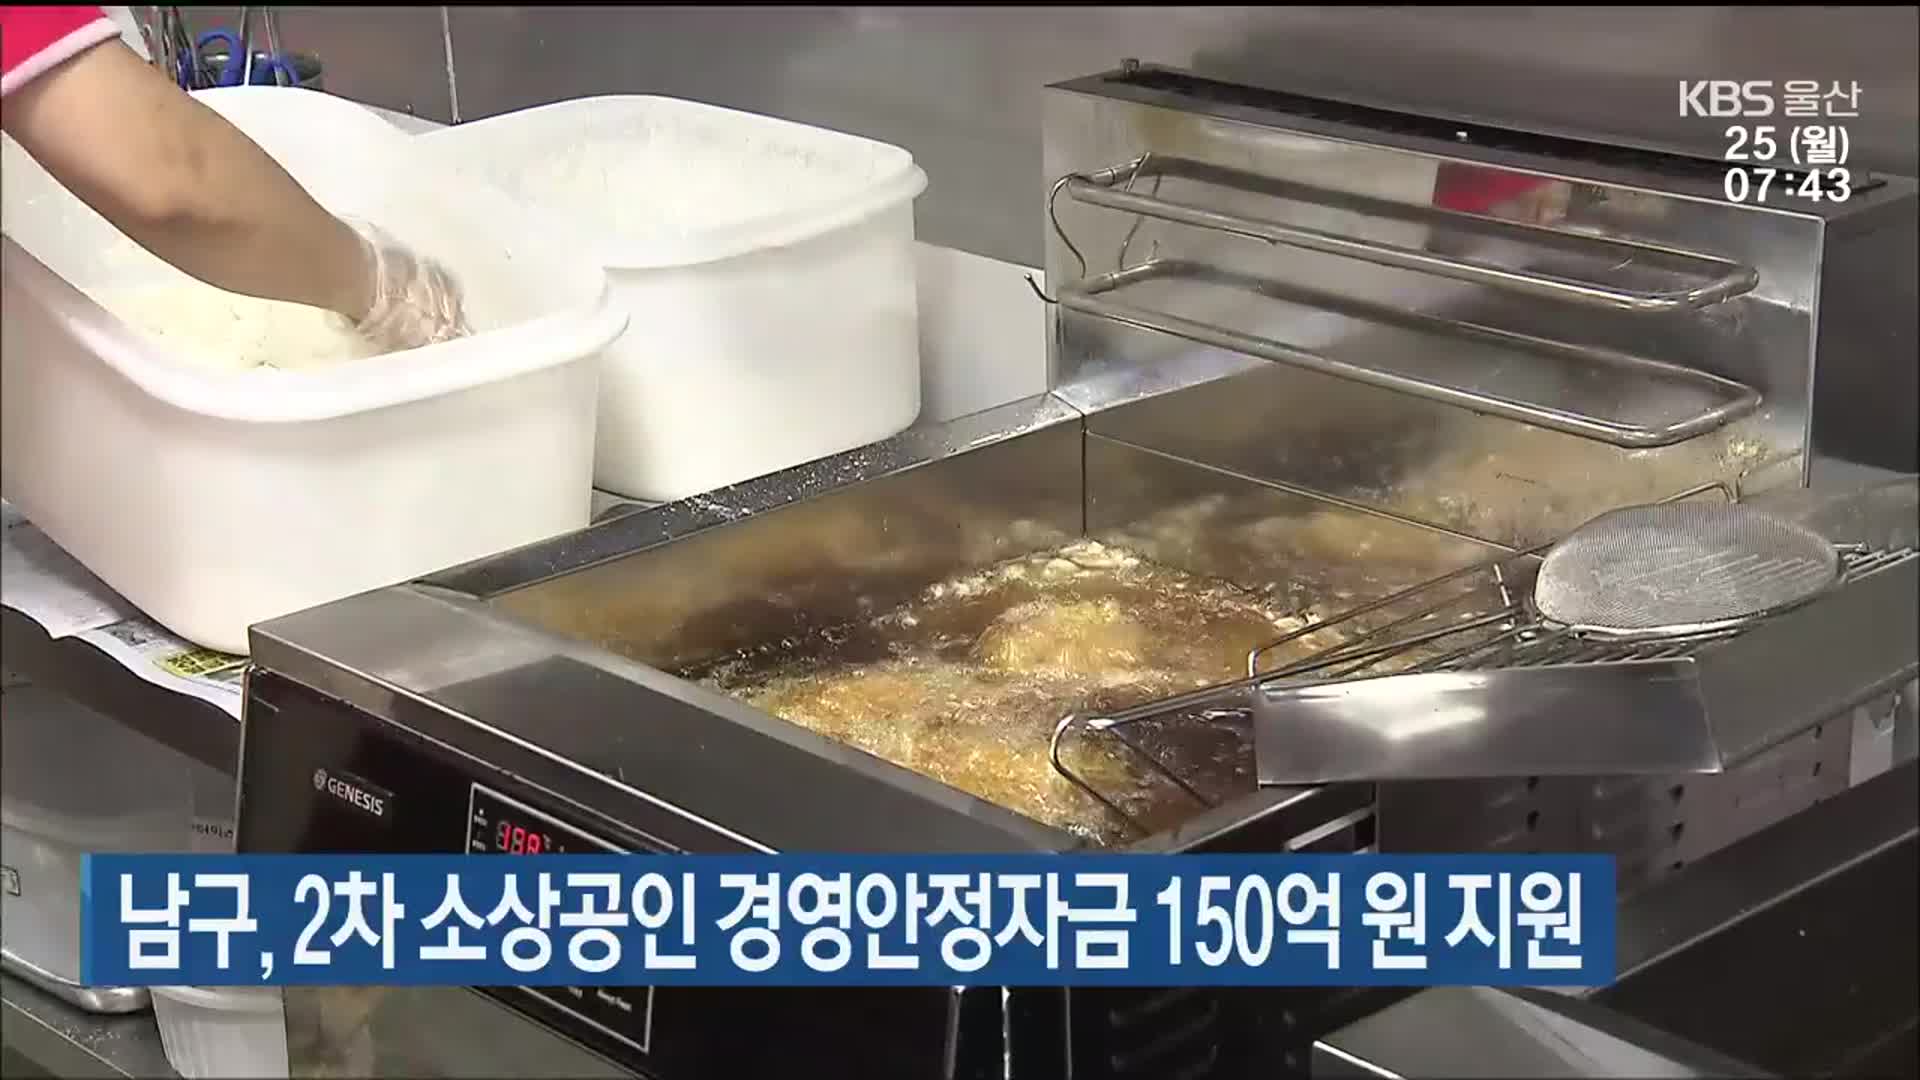 울산 남구, 2차 소상공인 경영안정자금 150억 원 지원